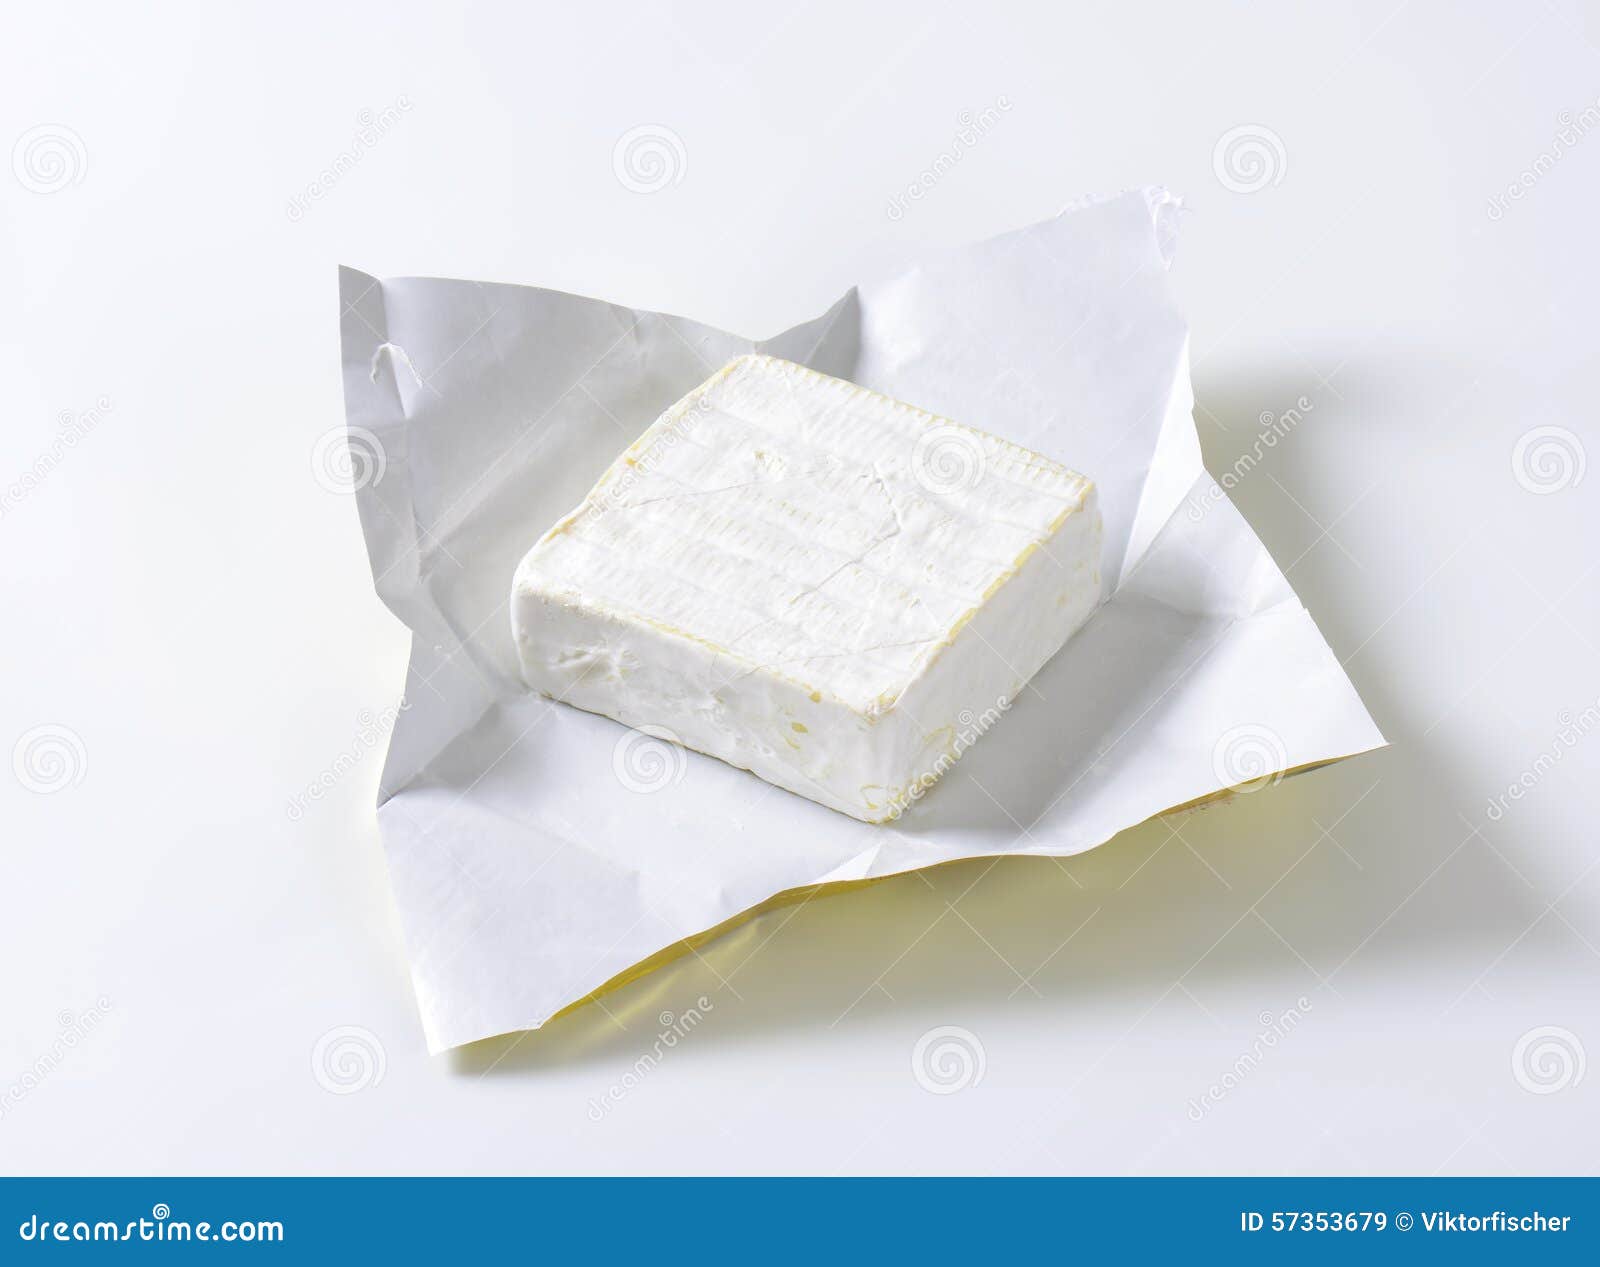 Біла з. Карре-де-л’ЭСТ. Сыр Карре. Сыр белый с кожурой белой. Квадратный молочный флегч.